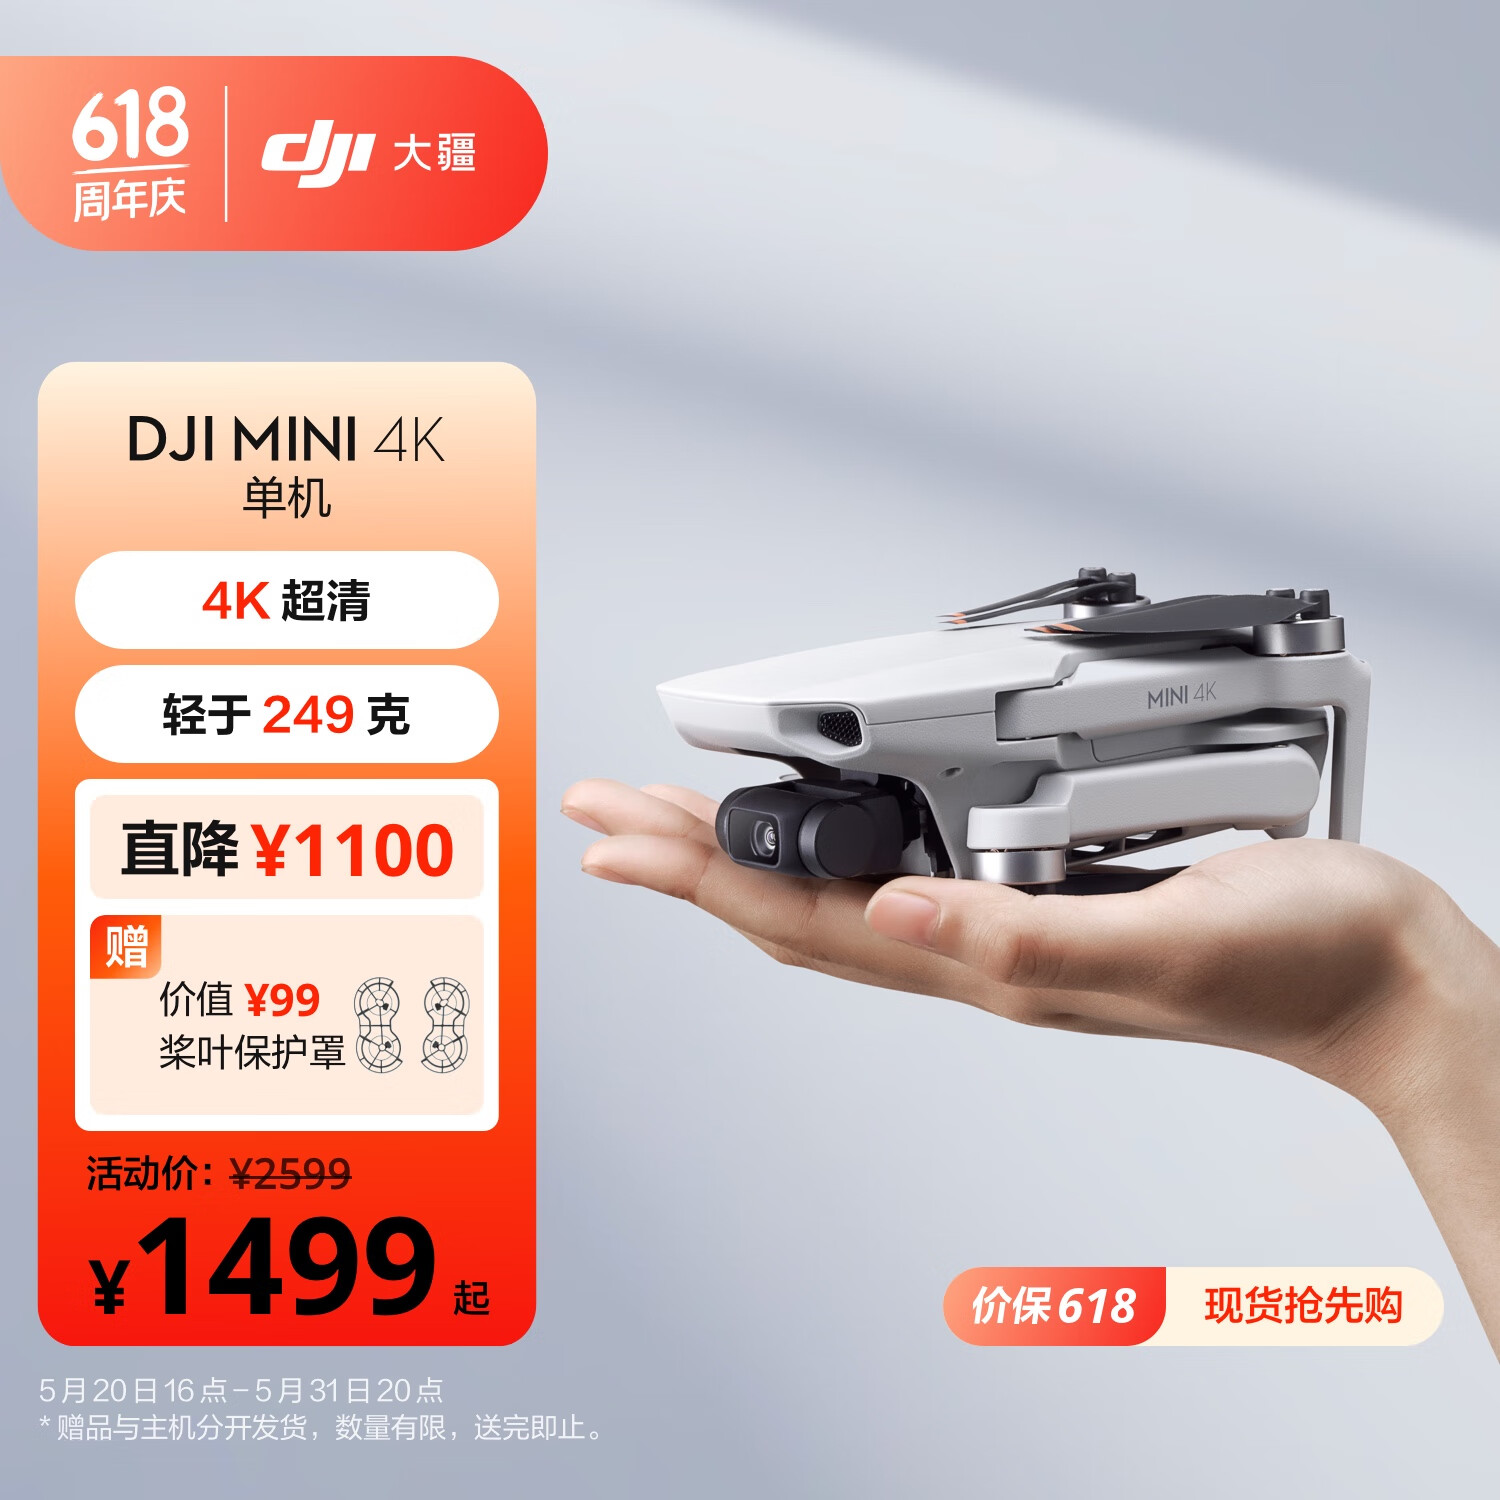 DJI 大疆 Mini 4K 超高清迷你航拍无人机 三轴机械增稳数字图传 新手入门级飞行相机